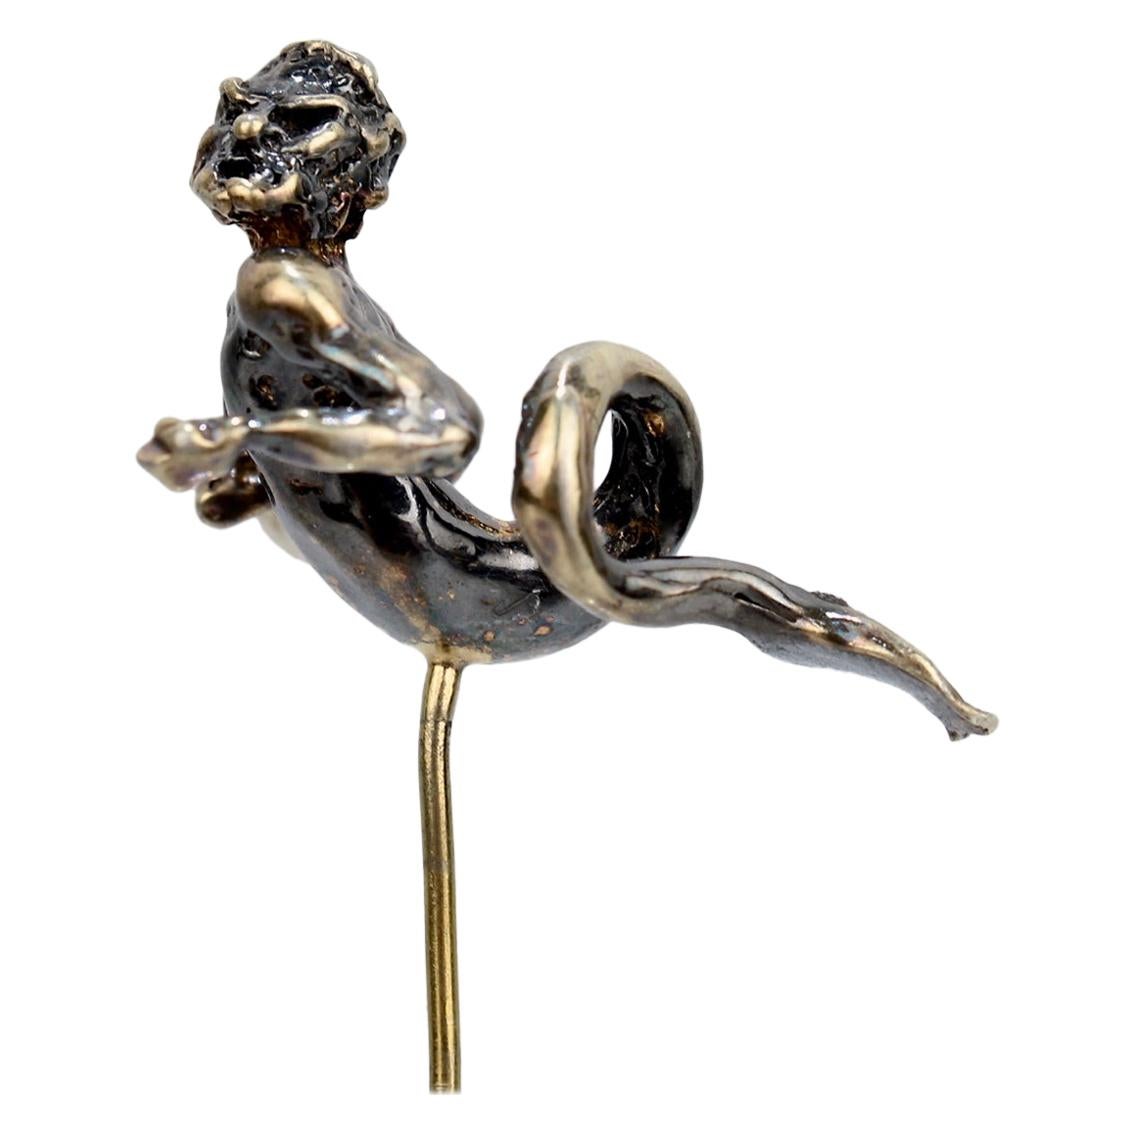 Épingle en forme de bâton figurative en or représentant Neptune ou Merman, style néo-renaissance